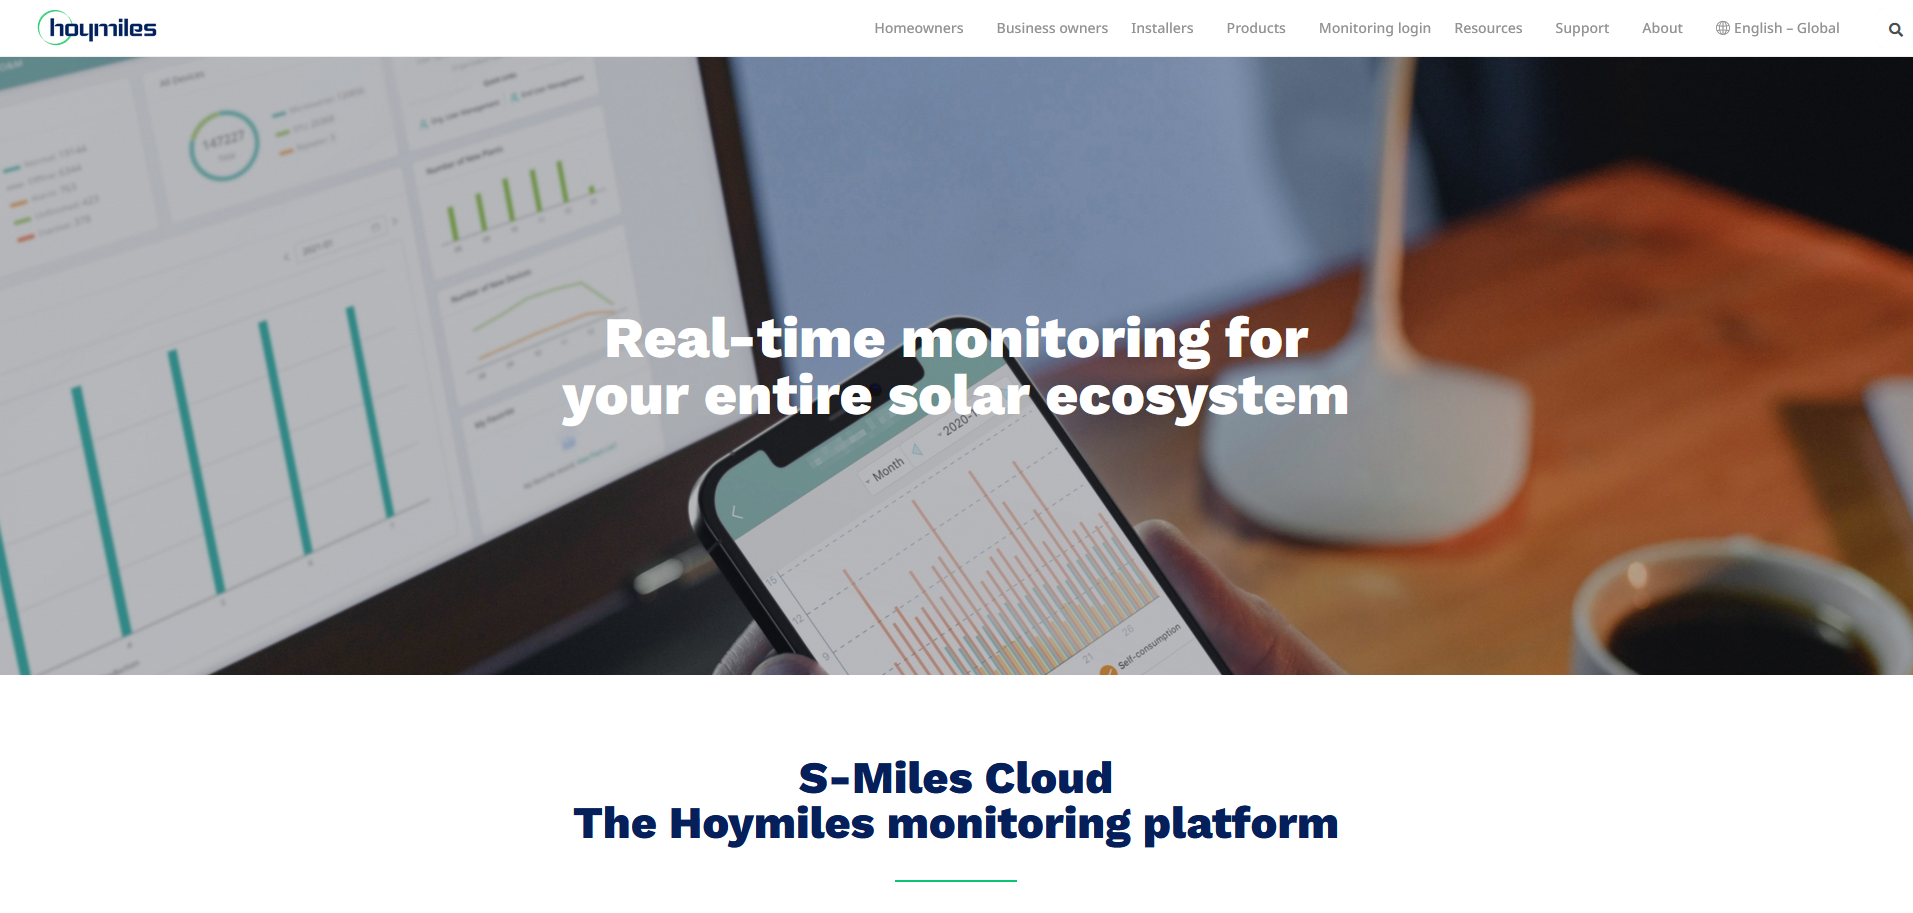 Hoymiles cloud monitoring platform